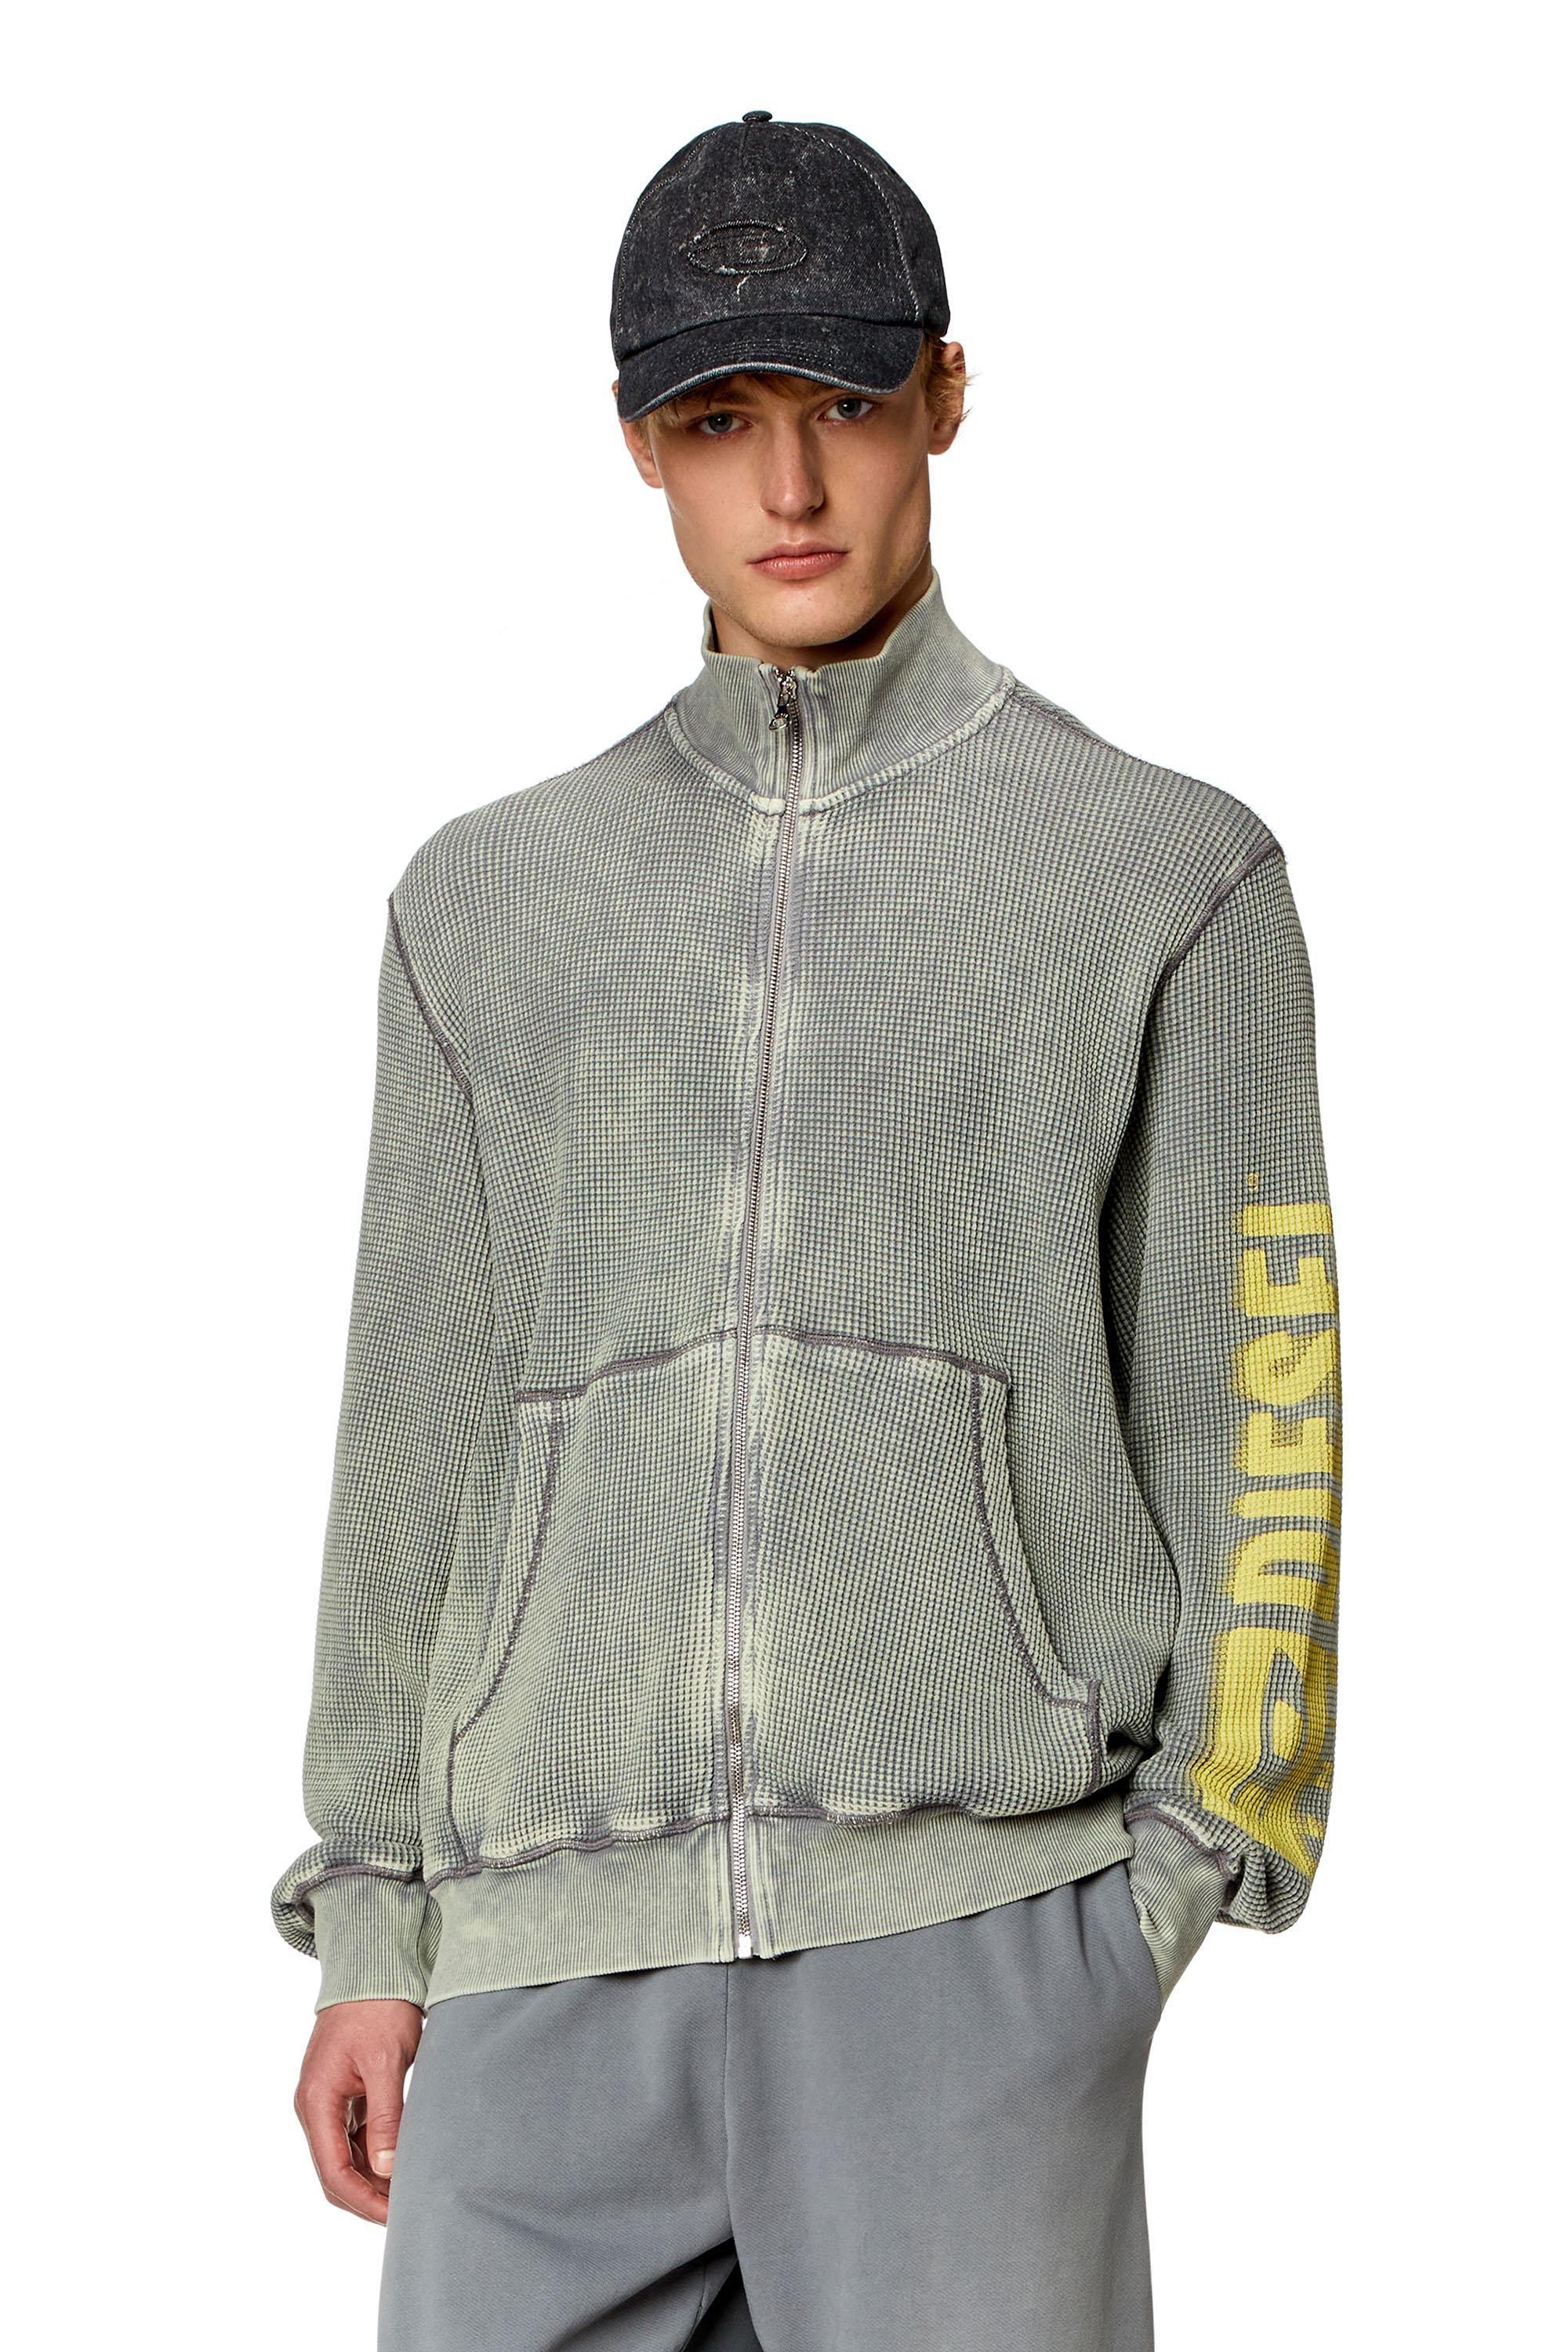 Diesel - Sweat-shirt zippé en jersey macro gaufré - Pull Cotton - Homme - Gris